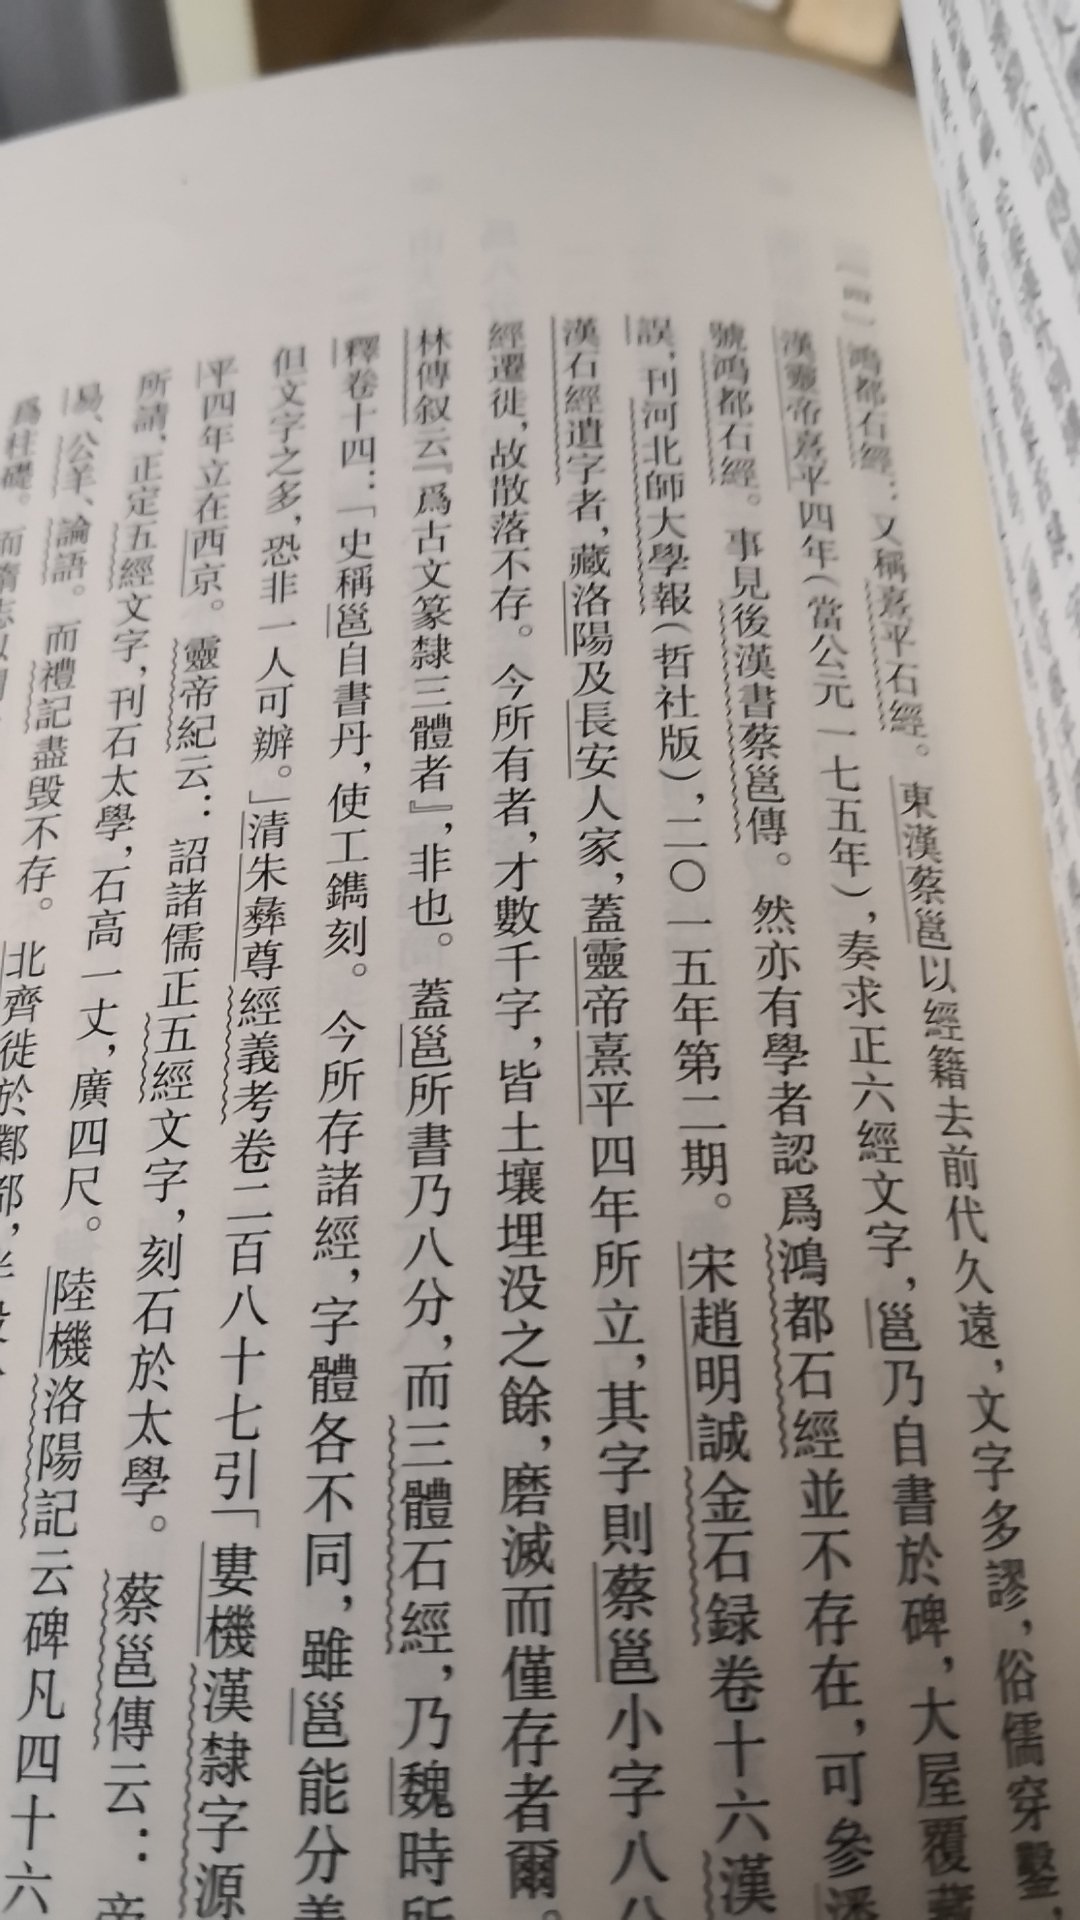 名家名作。中华书局出的。藏一本。正文前有影印的历代名家名帖。